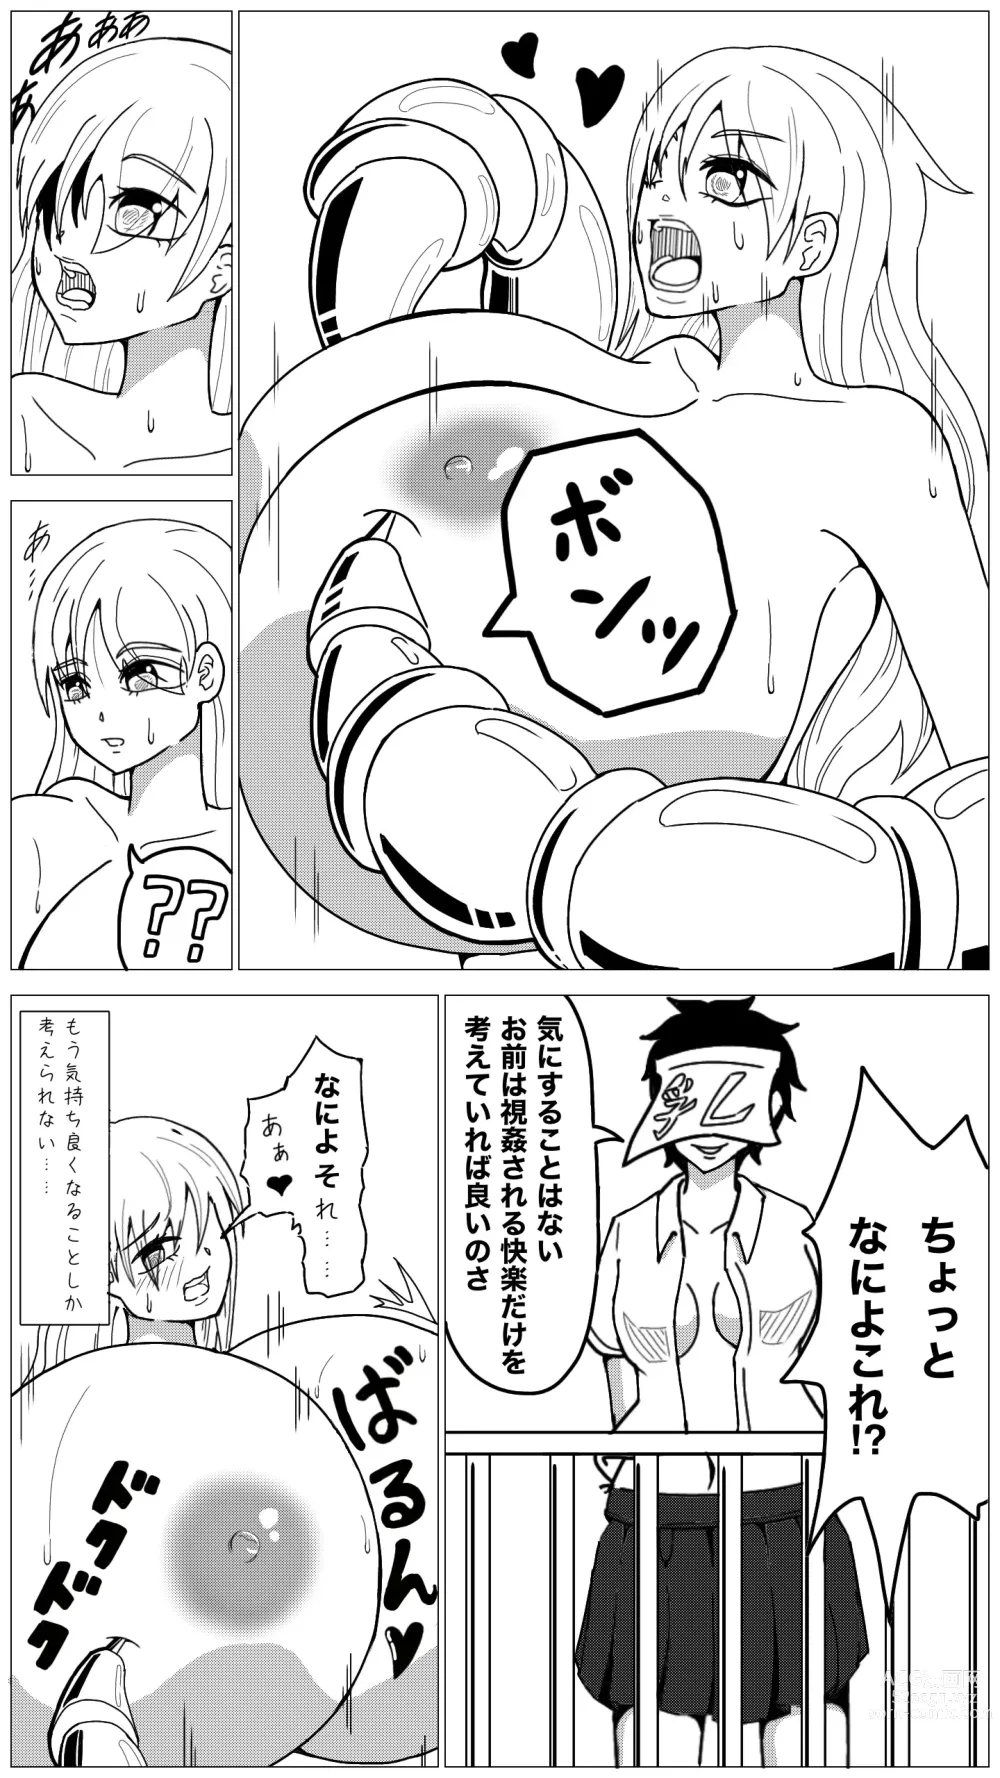 Page 11 of doujinshi Oppai Shiisougemu